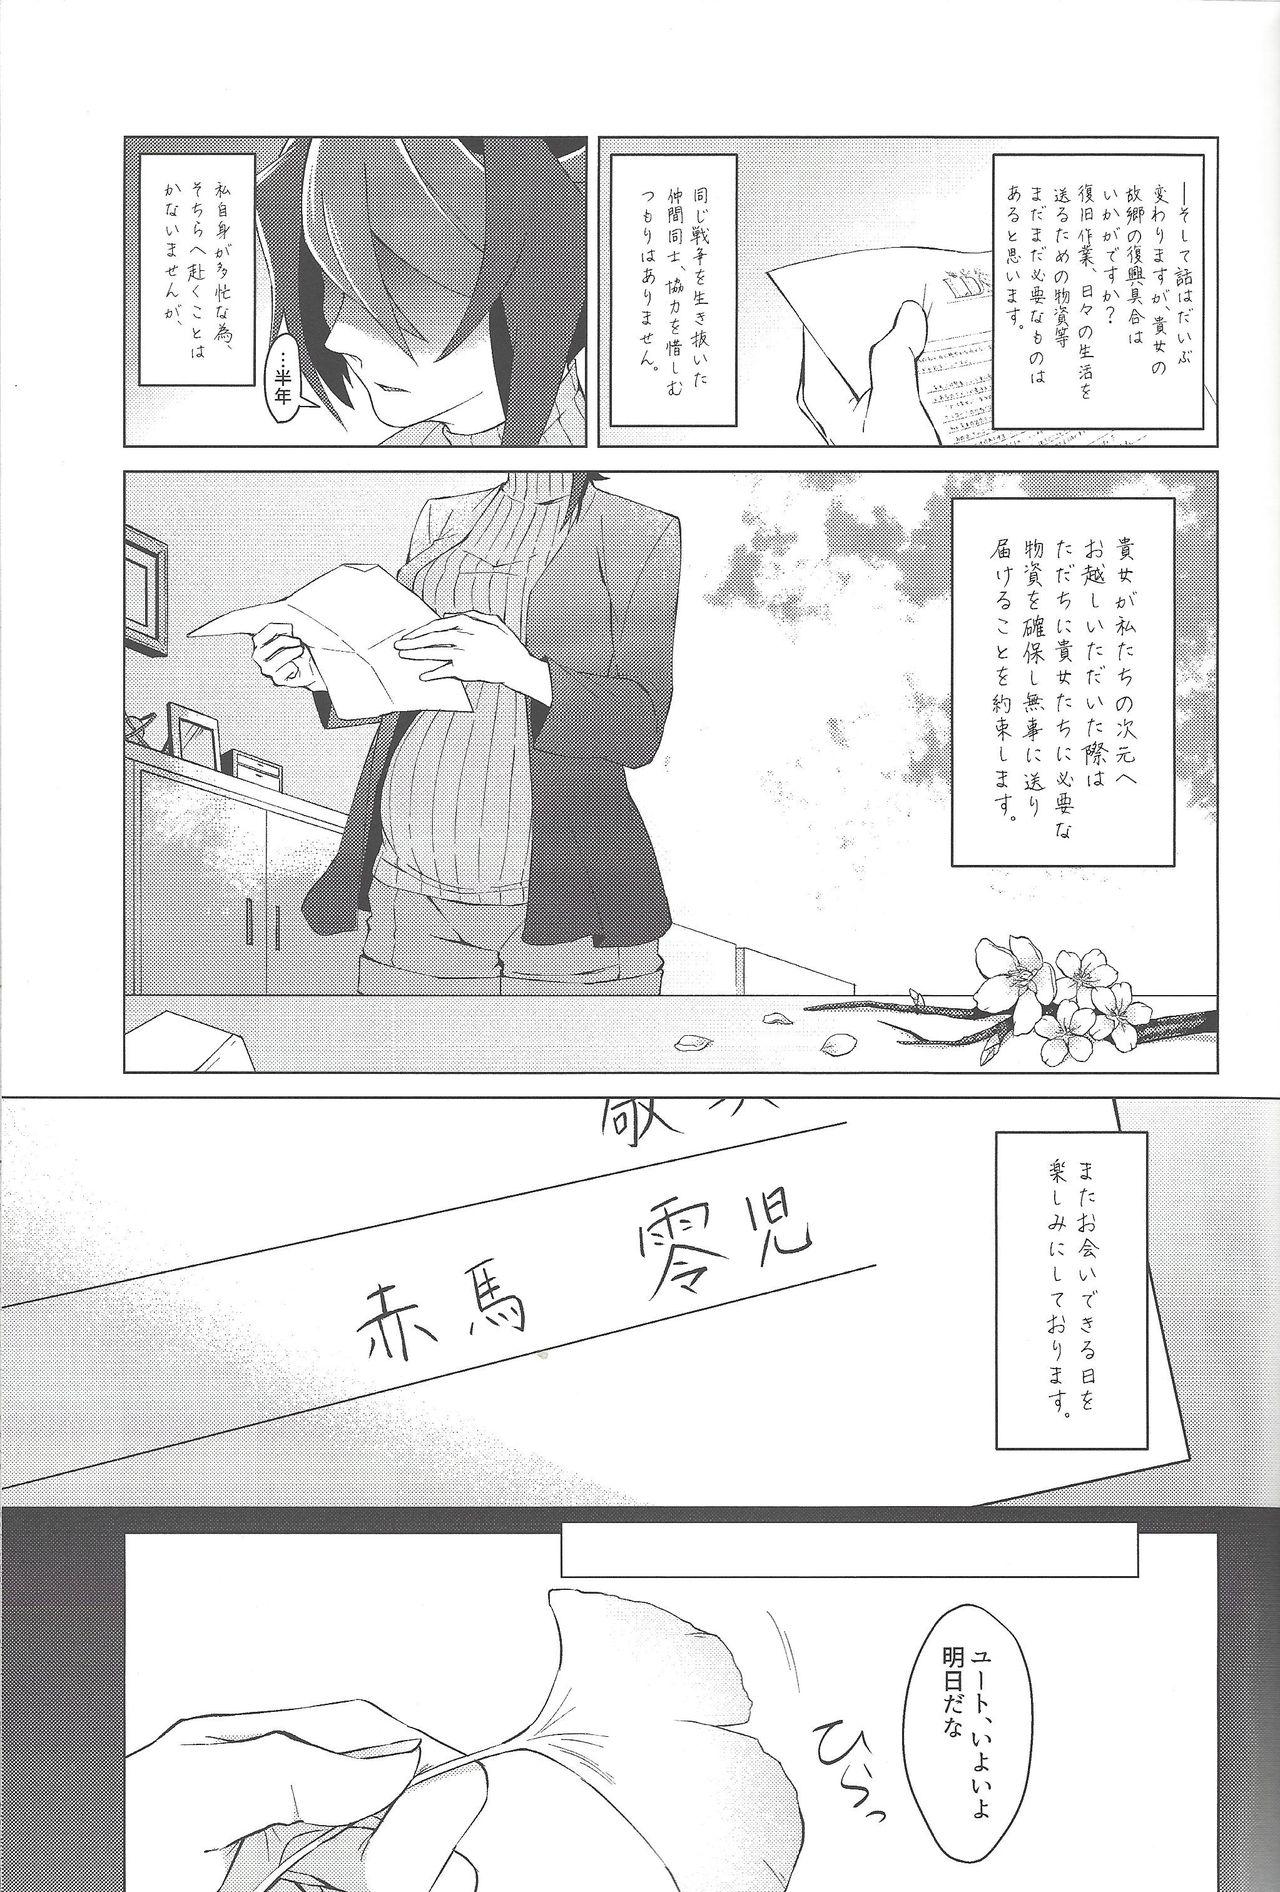 Consolo (Sennen Battle Phase 17) [Takeridake (Matsu)] Haikei, 21-shuu 6-kago no Kimi e (Yu-Gi-Oh! ARC-V) - Yu-gi-oh arc-v Sentones - Page 4